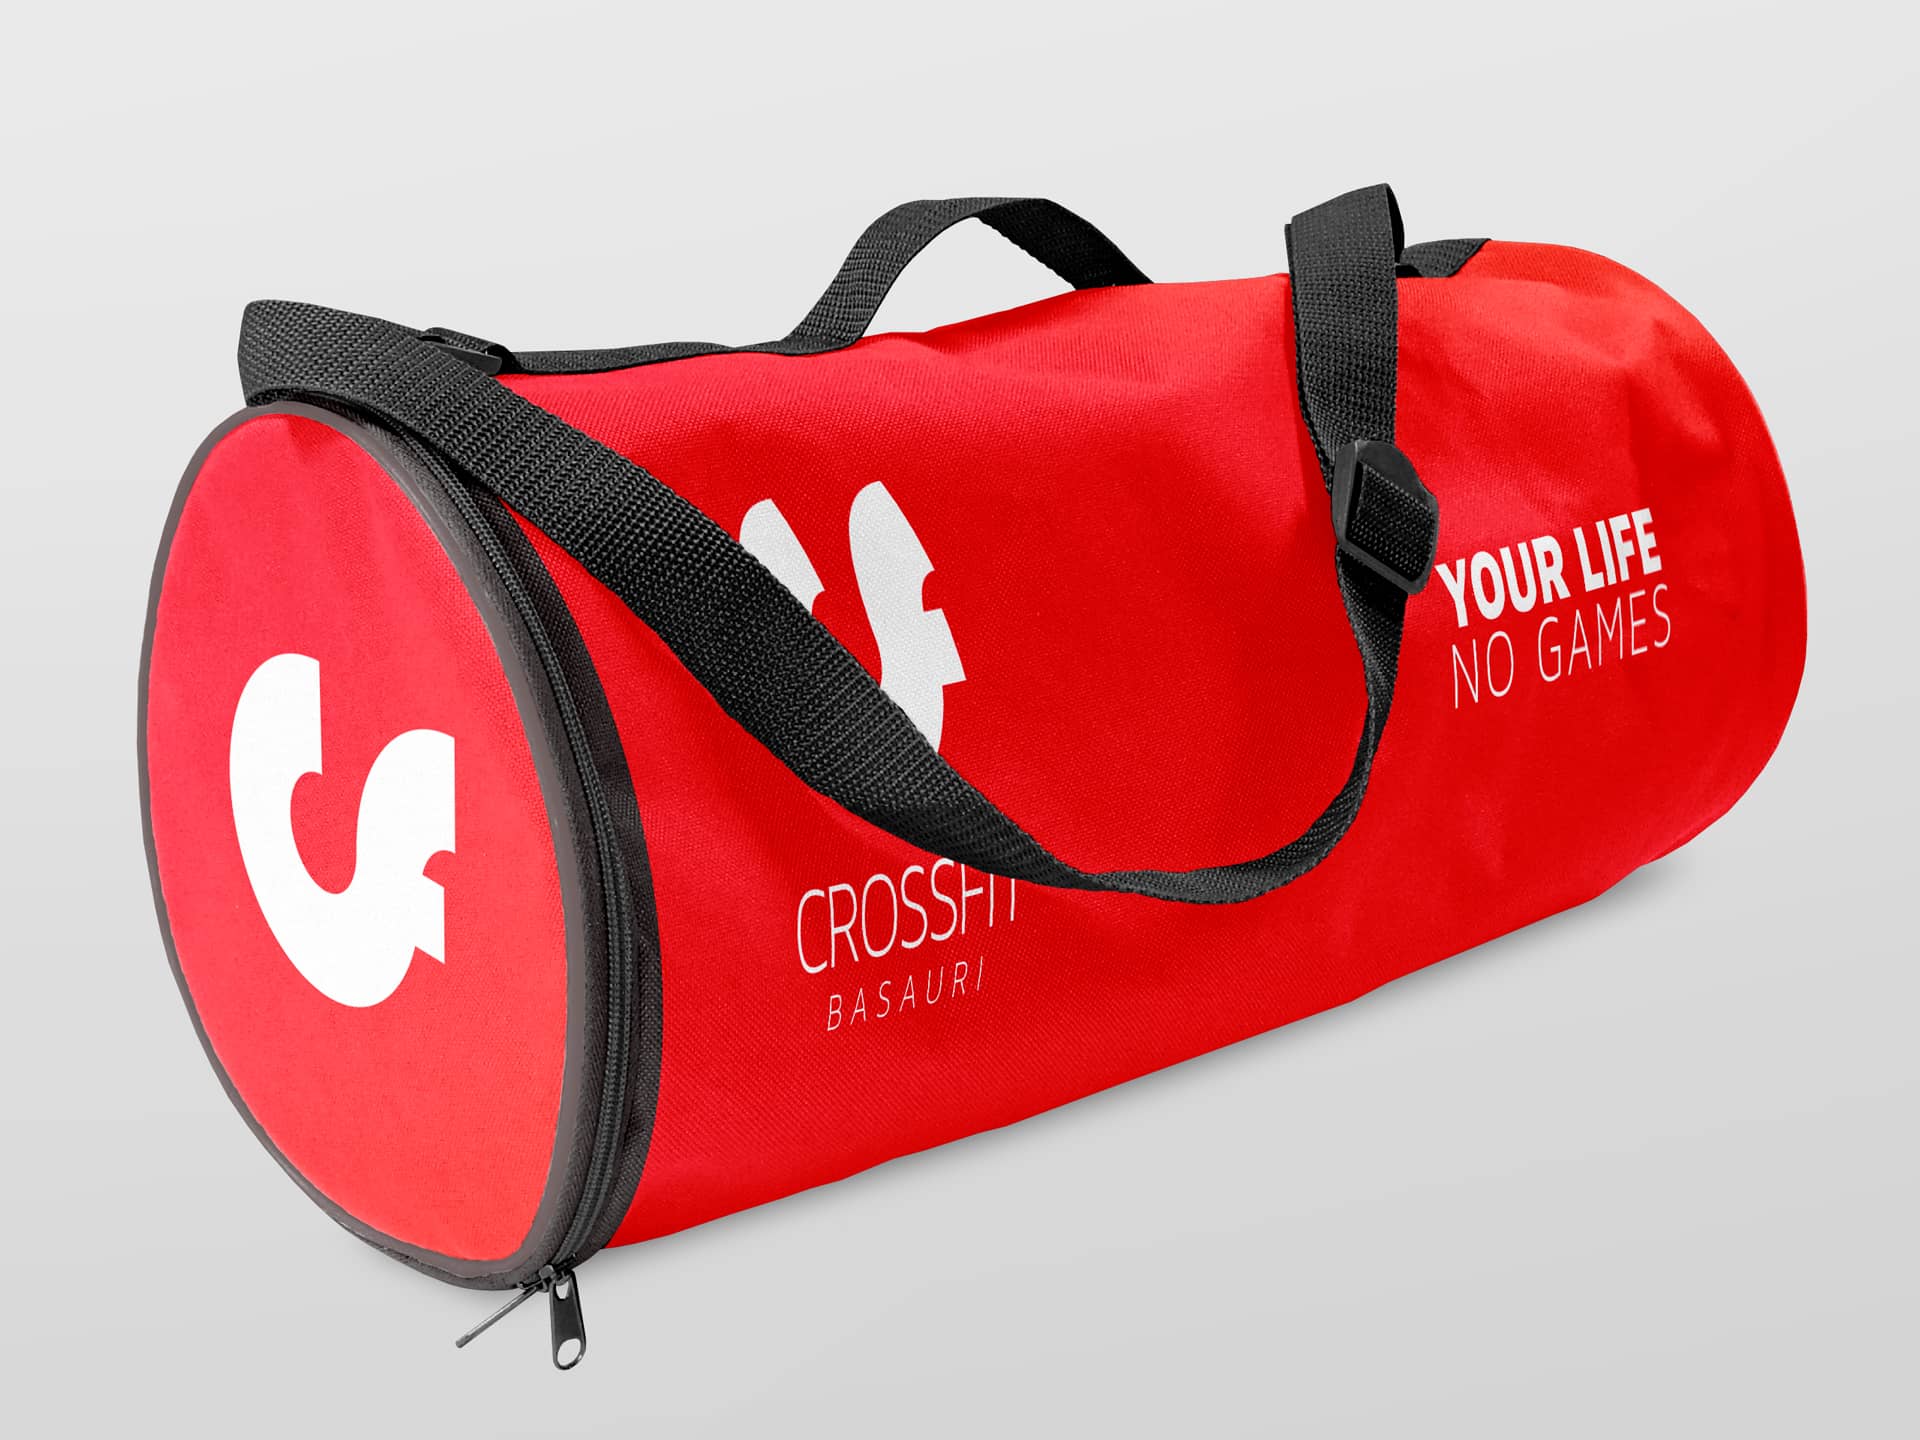 Bolso entrenamiento rojo Crossfit Basauri branding por The Acctitude